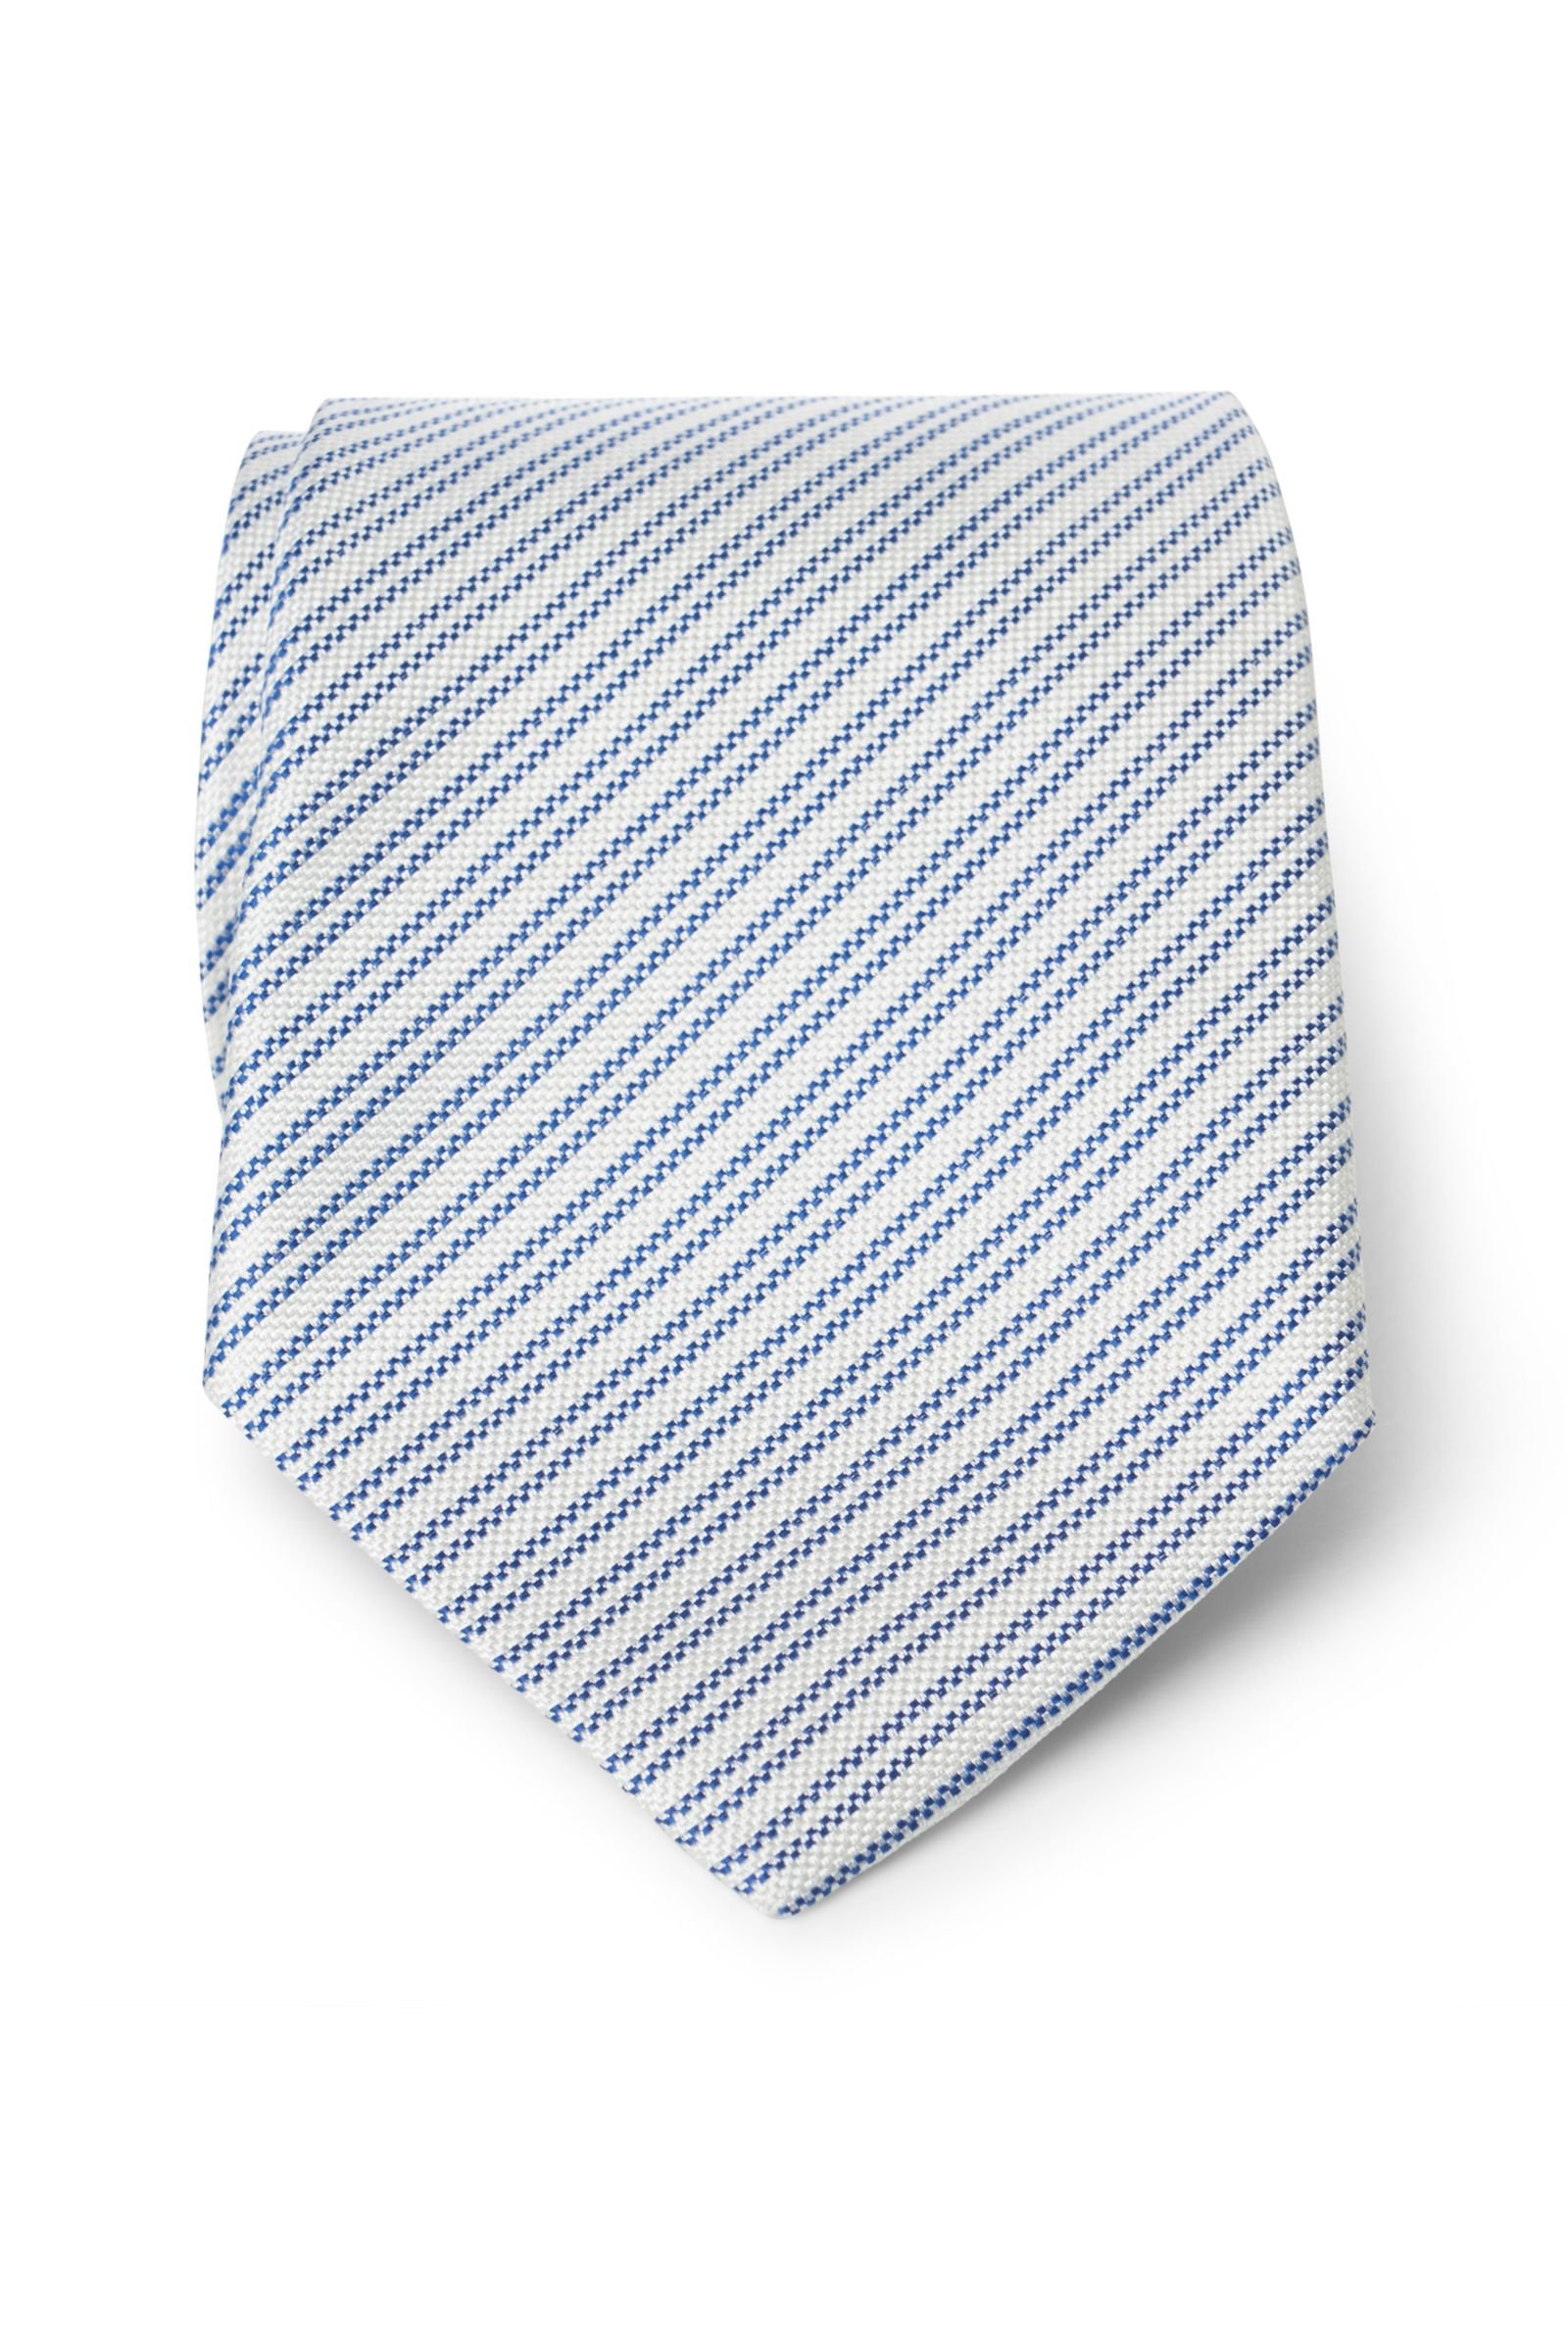 Silk tie blue striped